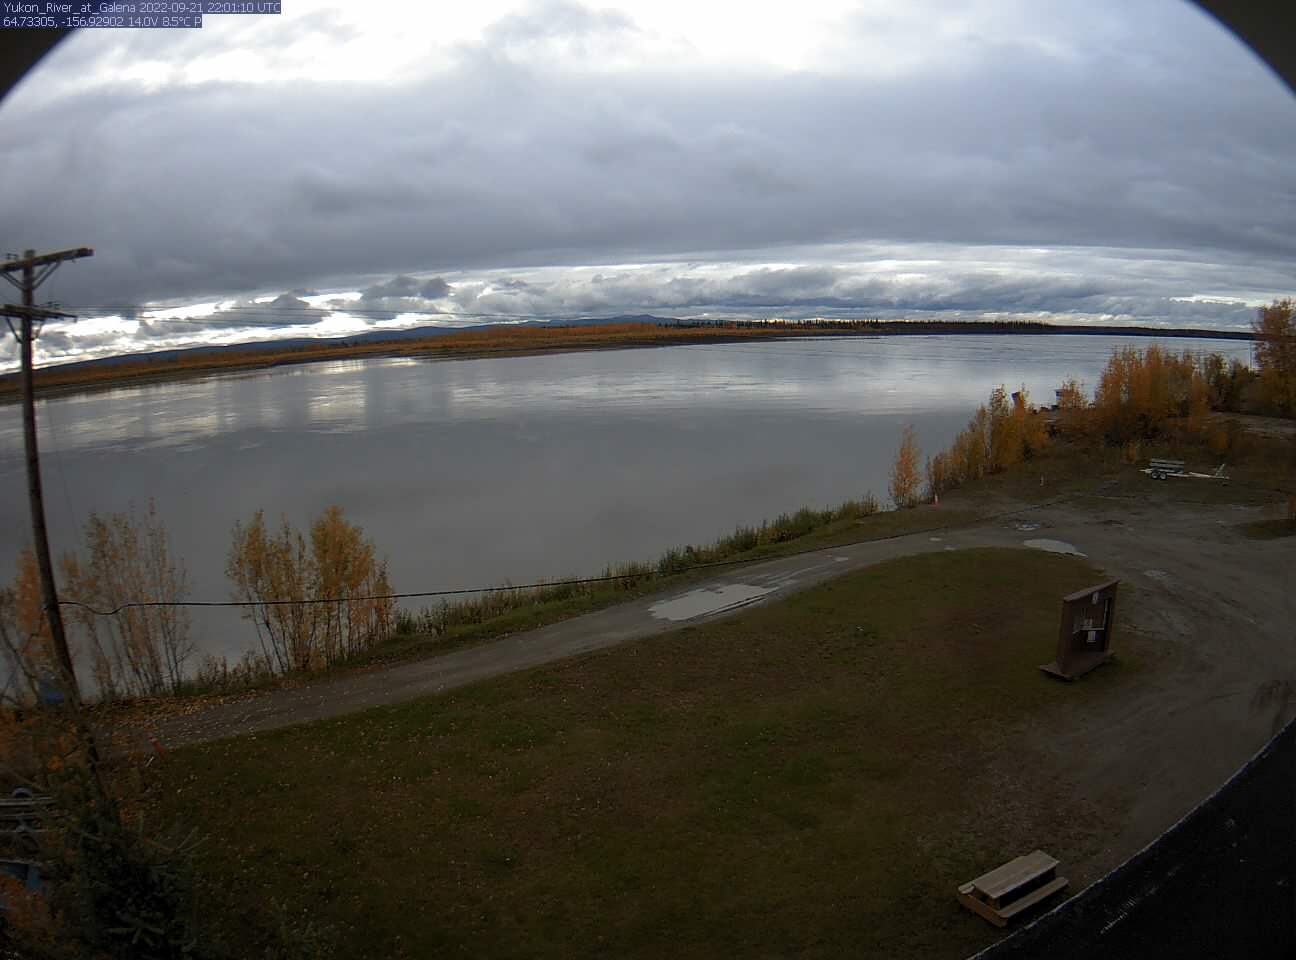 Yukon_River_at_Galena_20220921220111.jpg